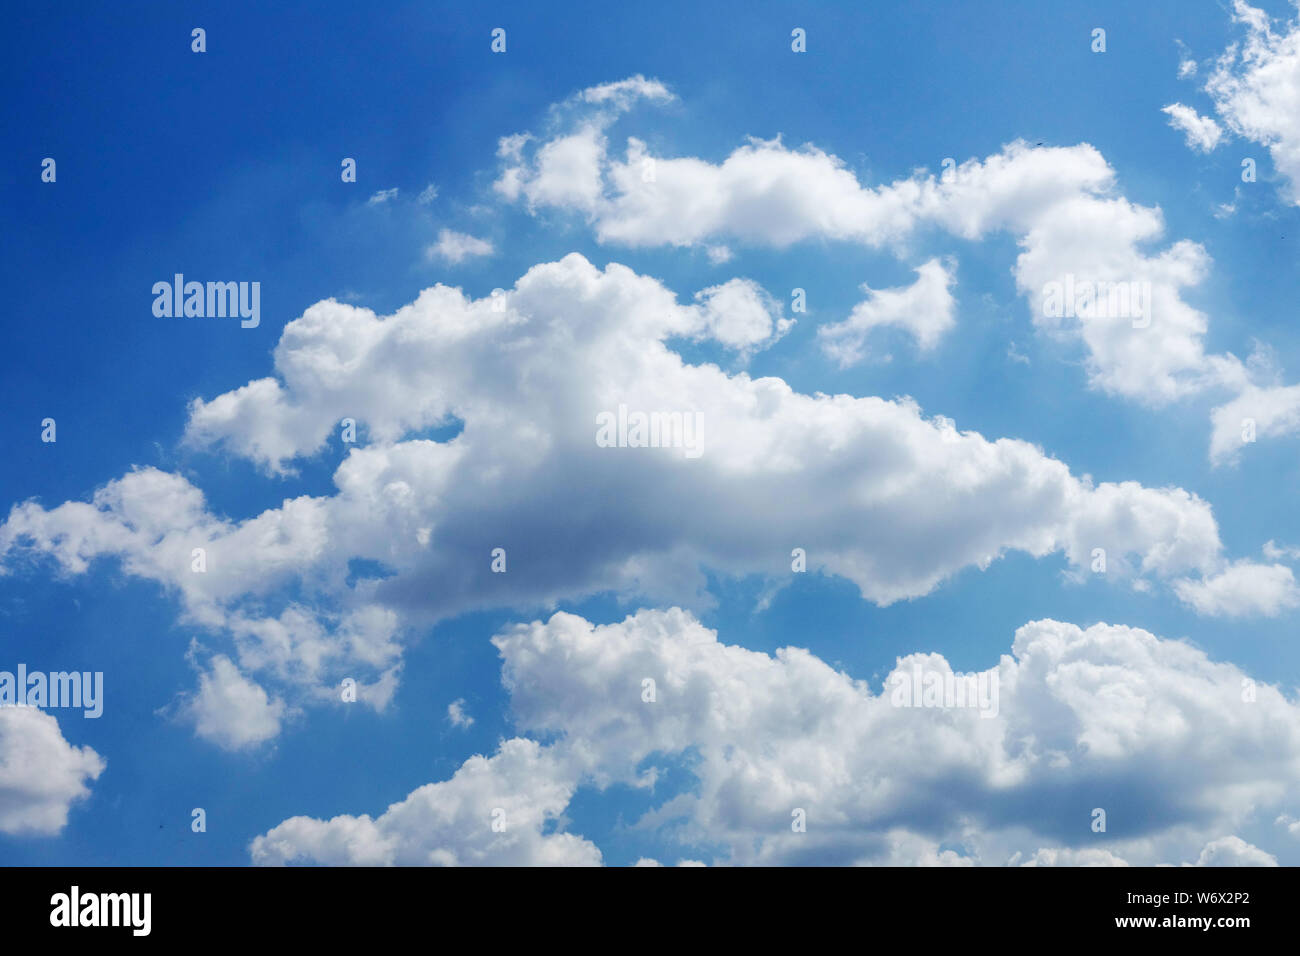 Le nuvole bianche fluffy galleggiano attraverso il cielo blu estivo Foto Stock